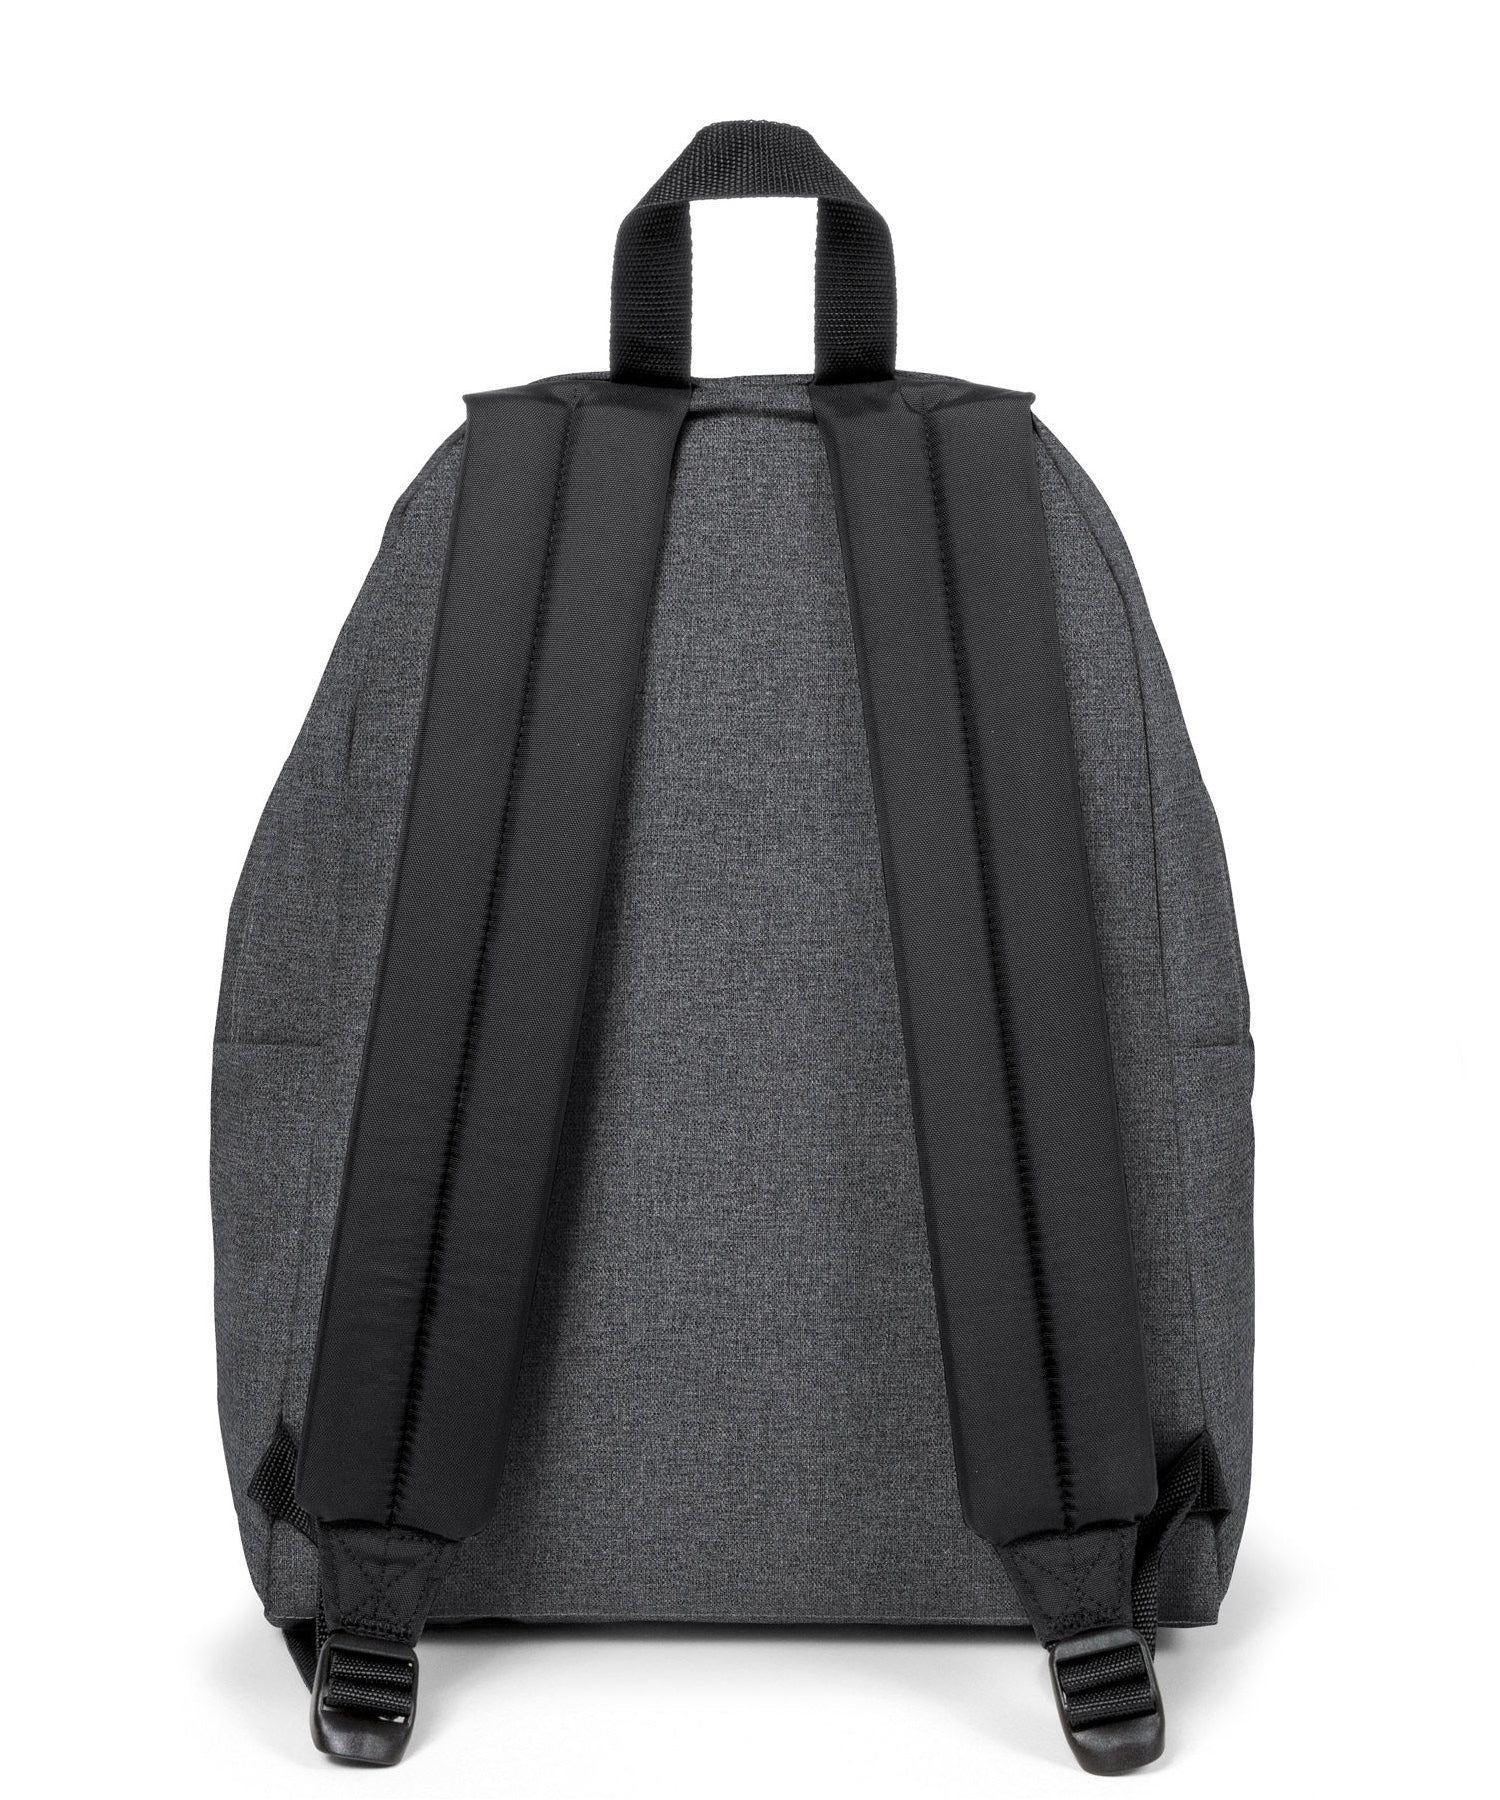 eastpak-padded-pak_r-color-negro-denim-bolsillo-exterior-un-clasico-de-las-mochilas-garantía-30-años